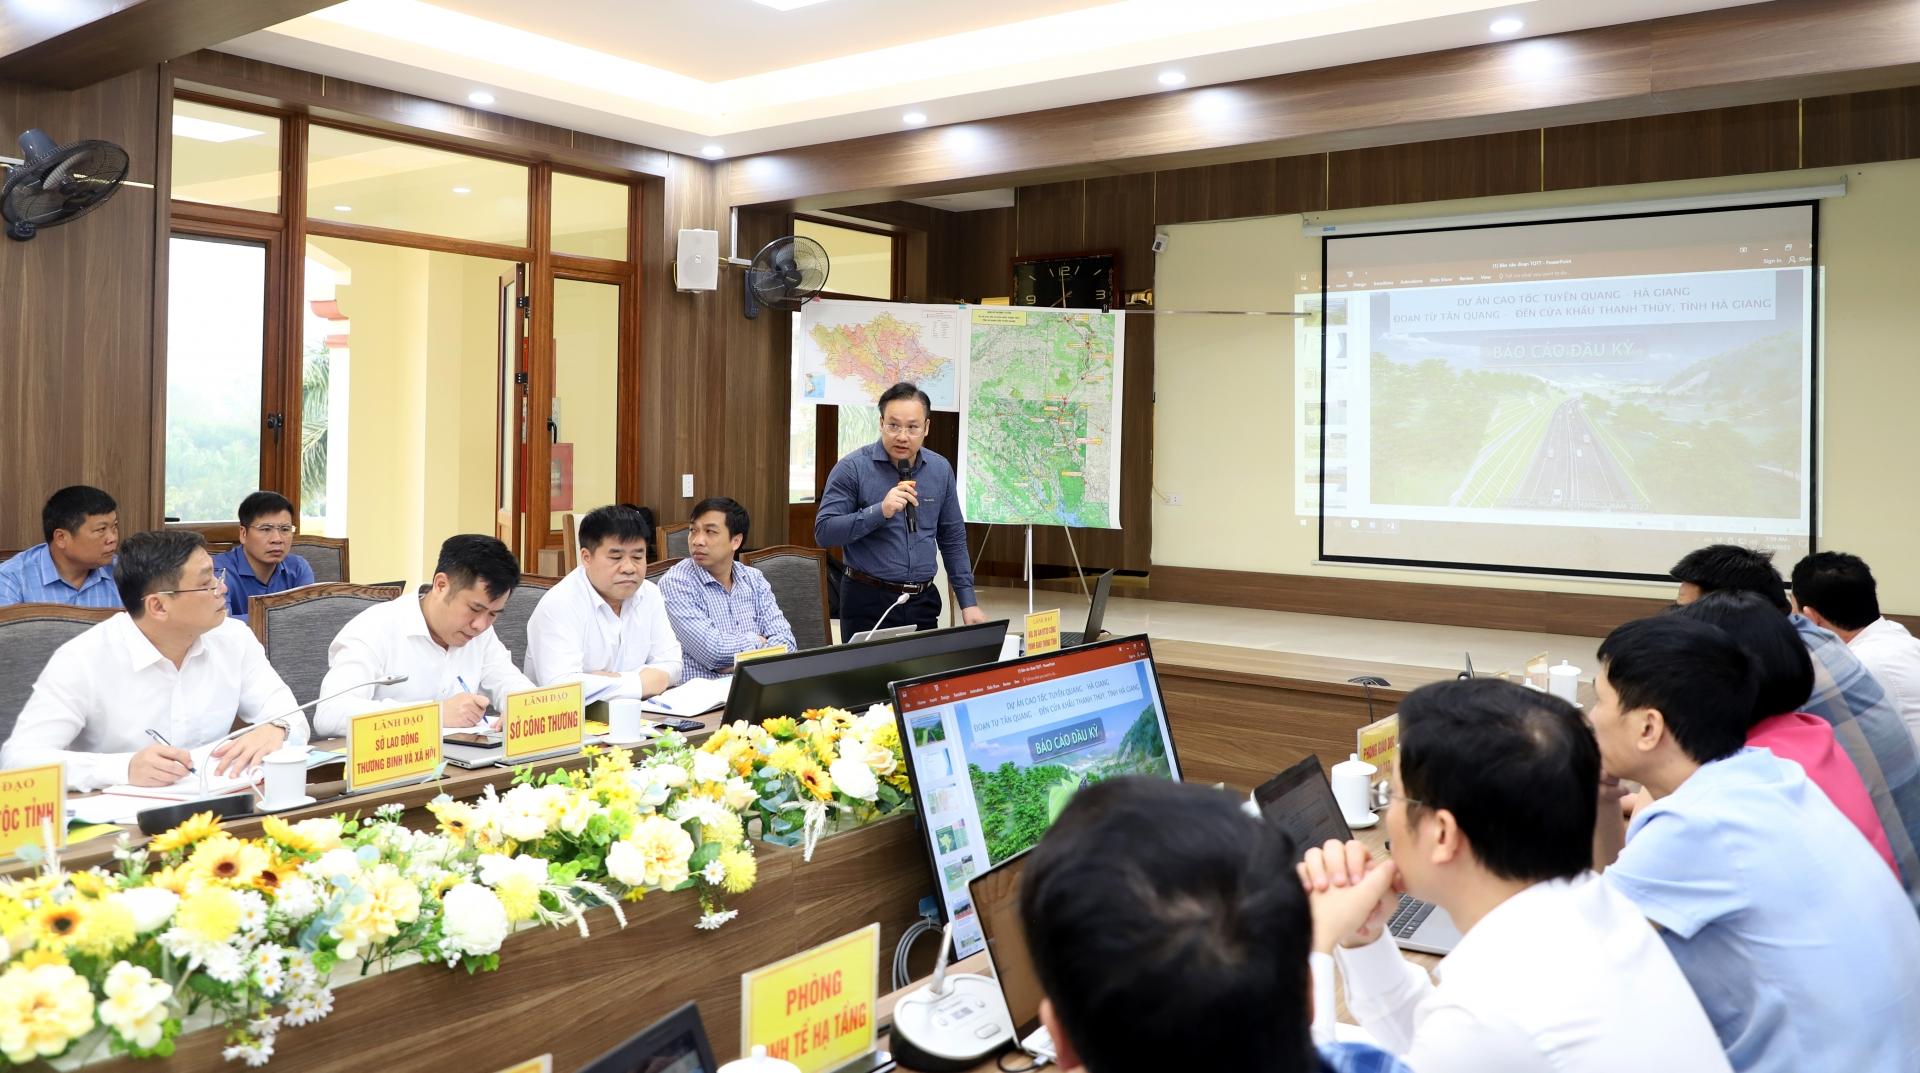 Lãnh đạo Ban quản lý Dự án Đầu tư công trình giao thông tỉnh báo cáo đầu kỳ dự án đường cao tốc đoạn từ xã Tân Quang đi Cửa khẩu Quốc tế Thanh Thủy.